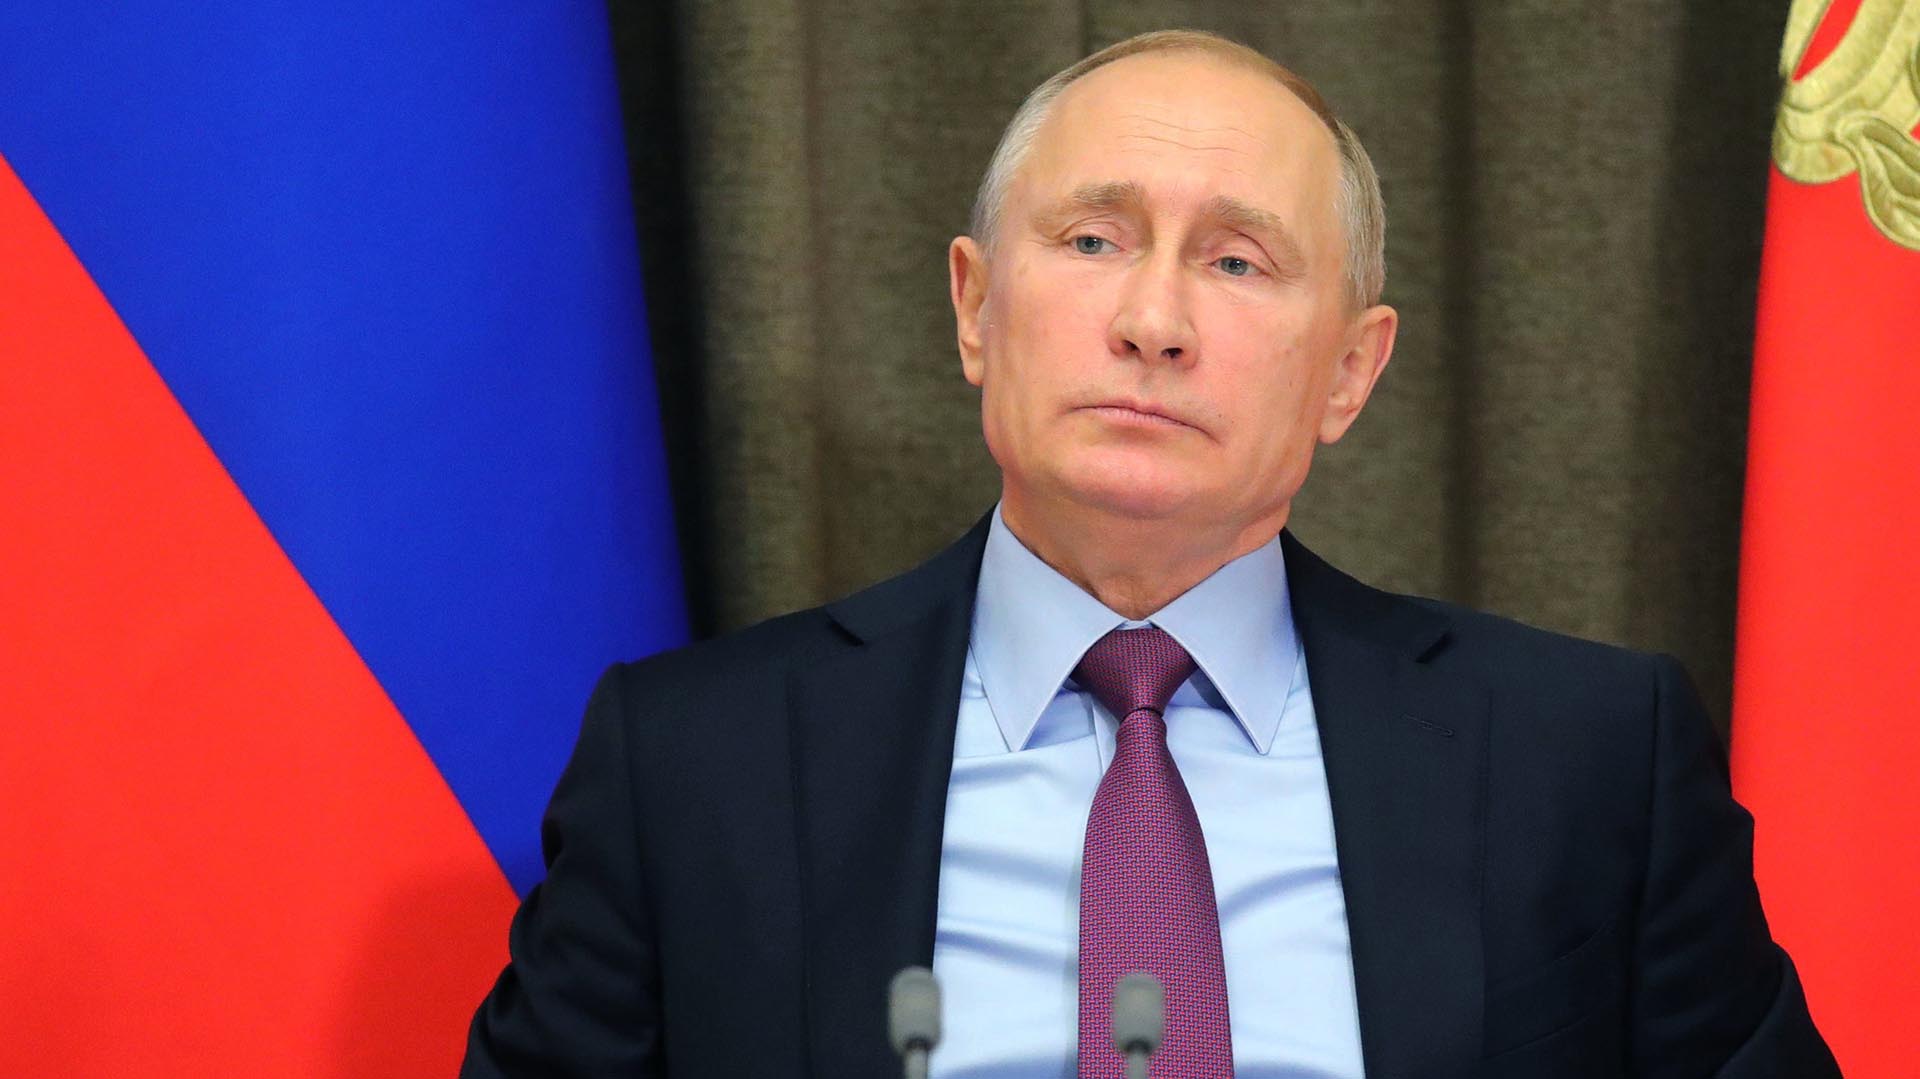 Estados Unidos volvió a advertir a Putin que si usa armas nucleares “tendrá consecuencias catastróficas para Rusia”